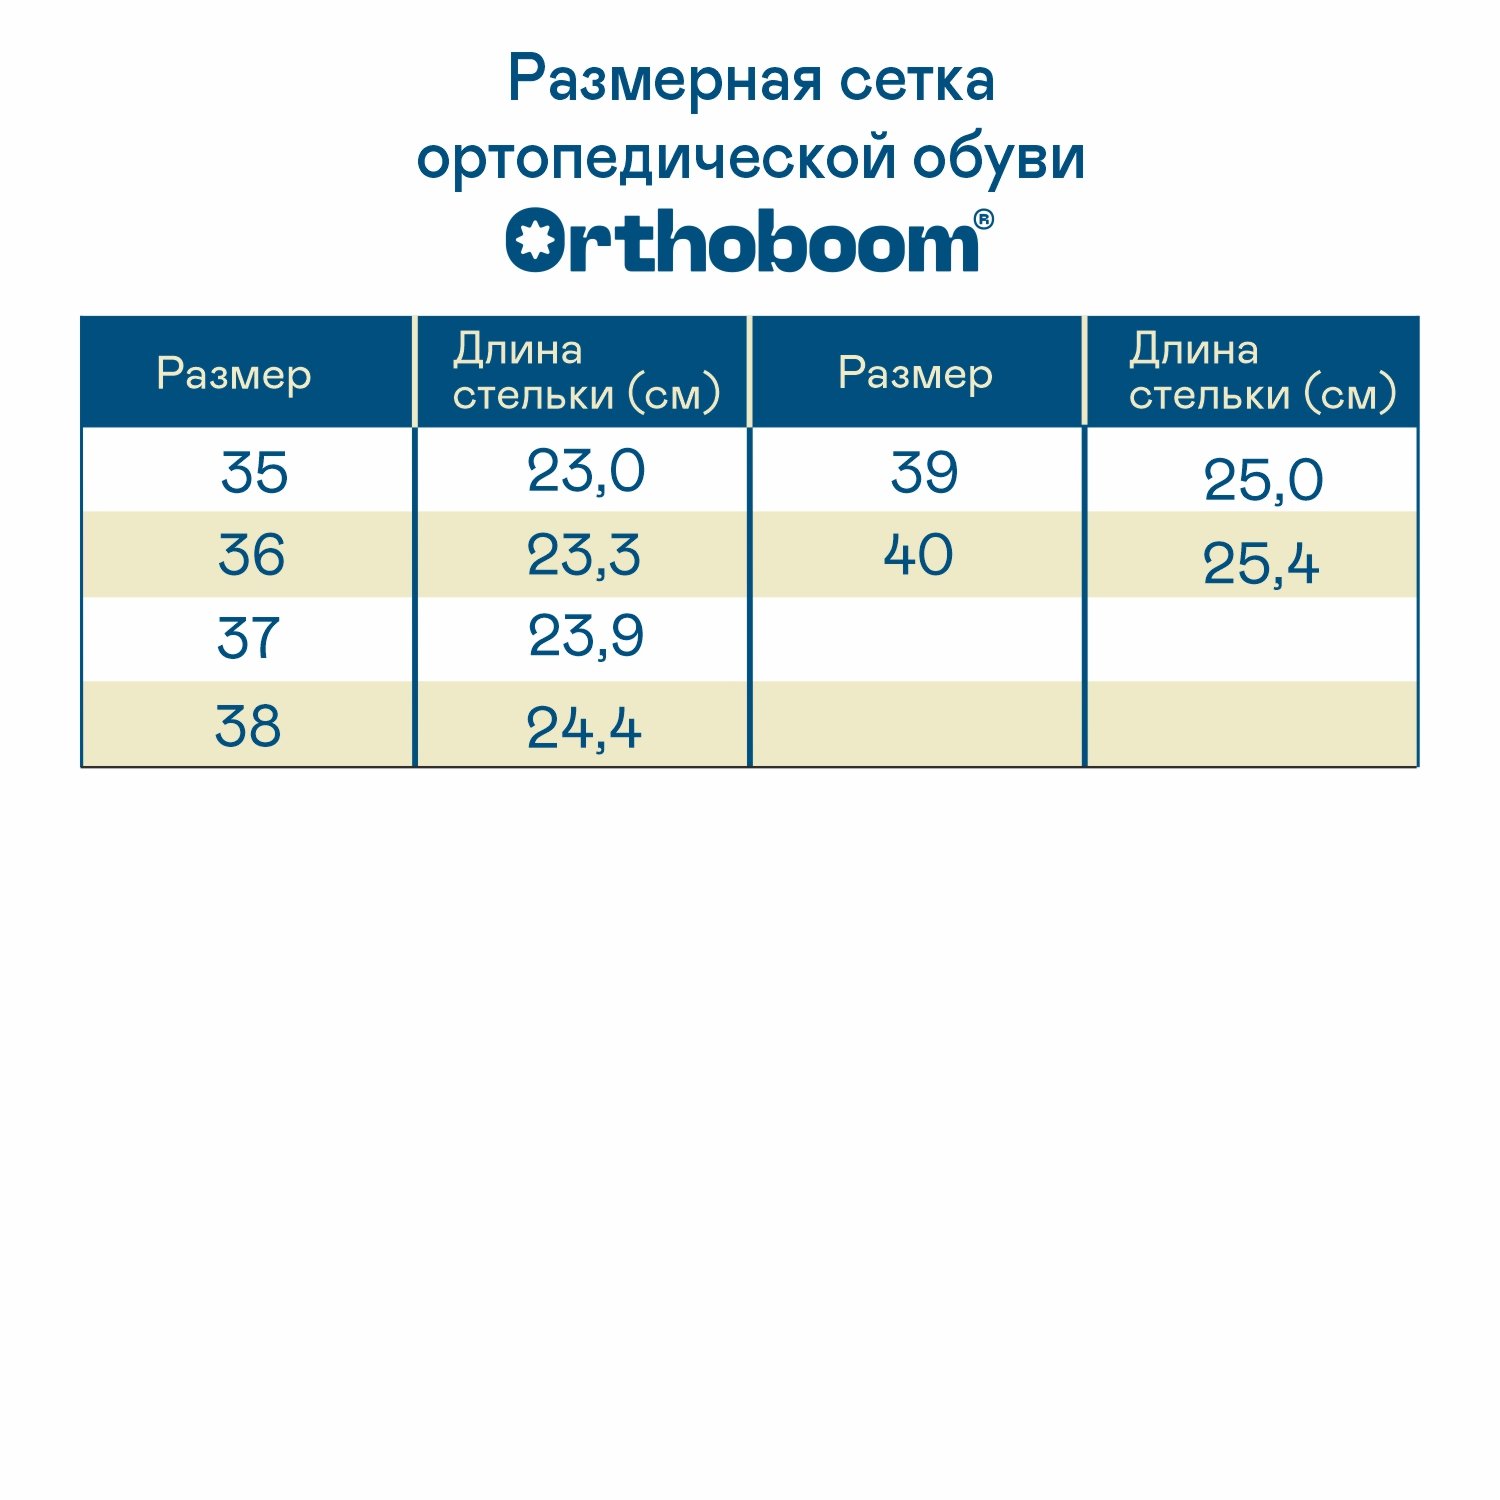 Женские сабо ORTHOBOOM 20037-02 антрацит